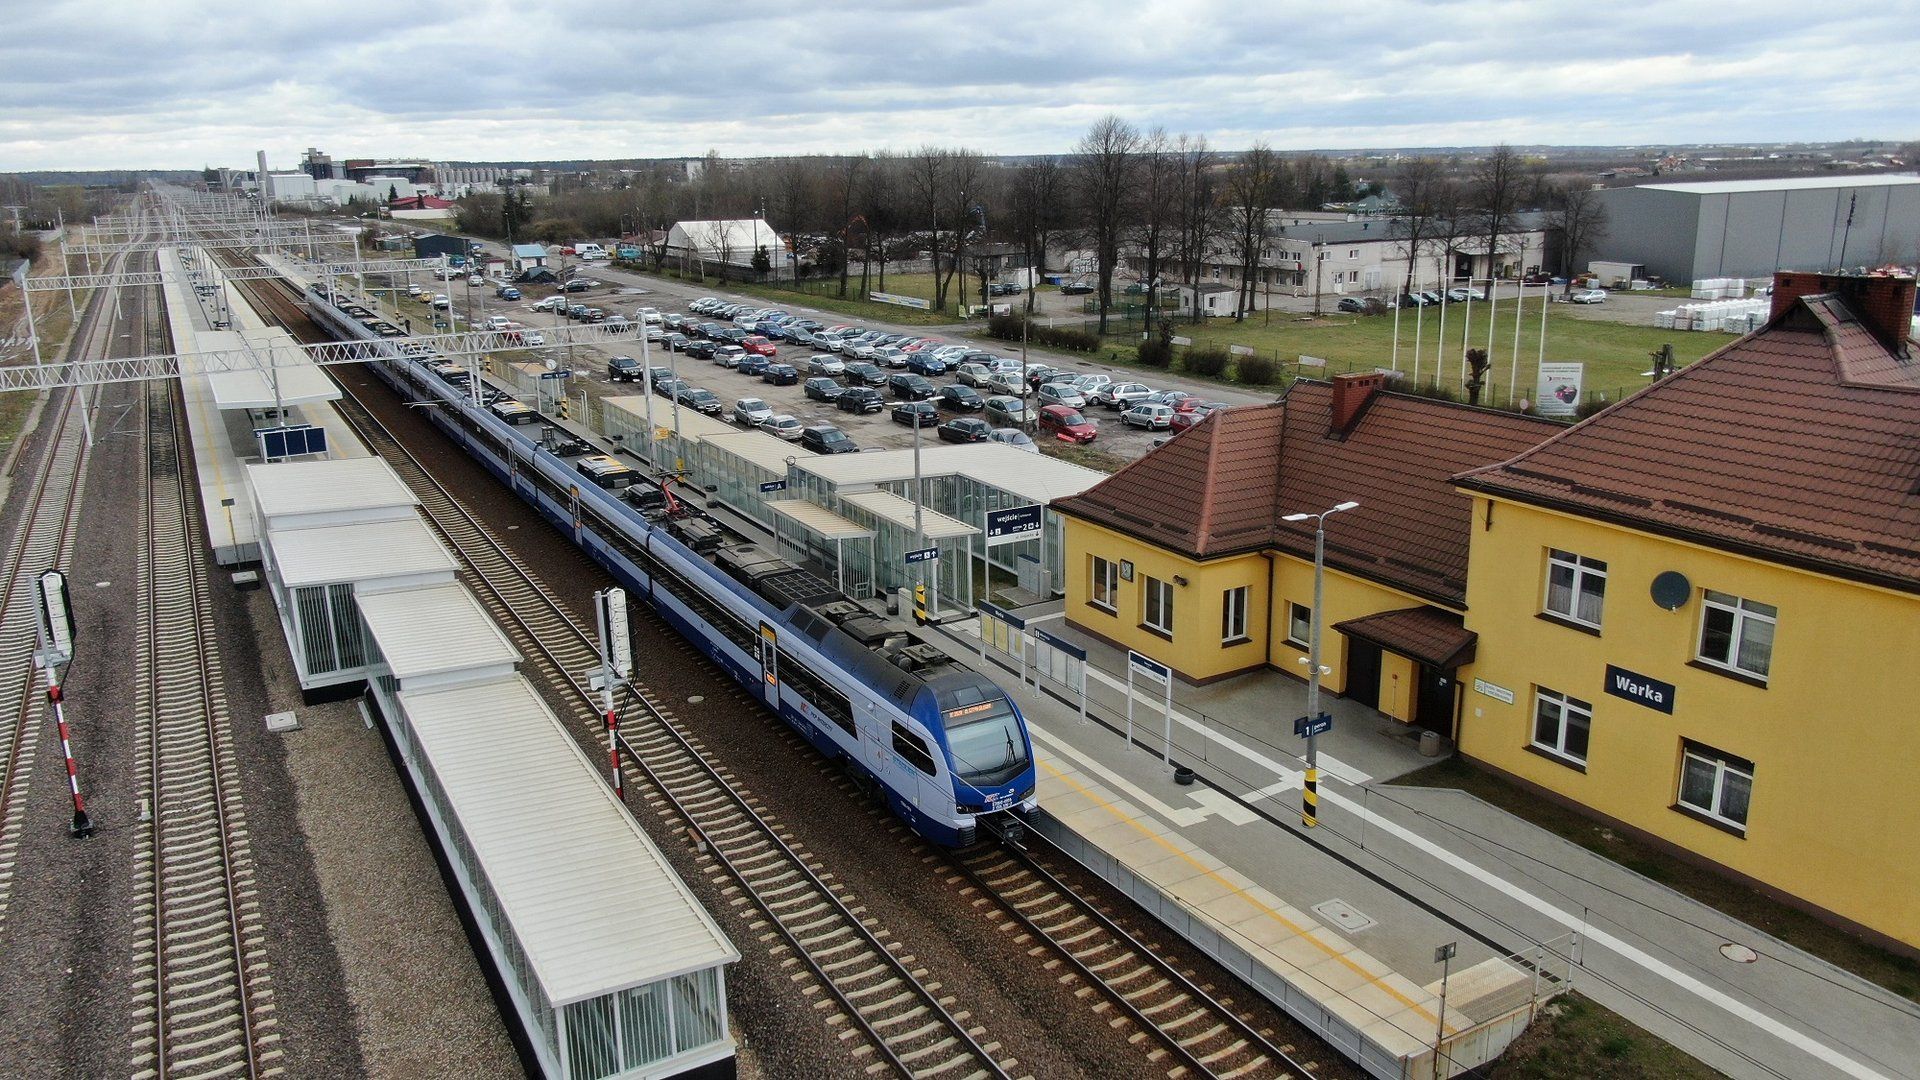 Powstaną nowe parkingi przy stacjach i przystankach między Warszawą a Radomiem